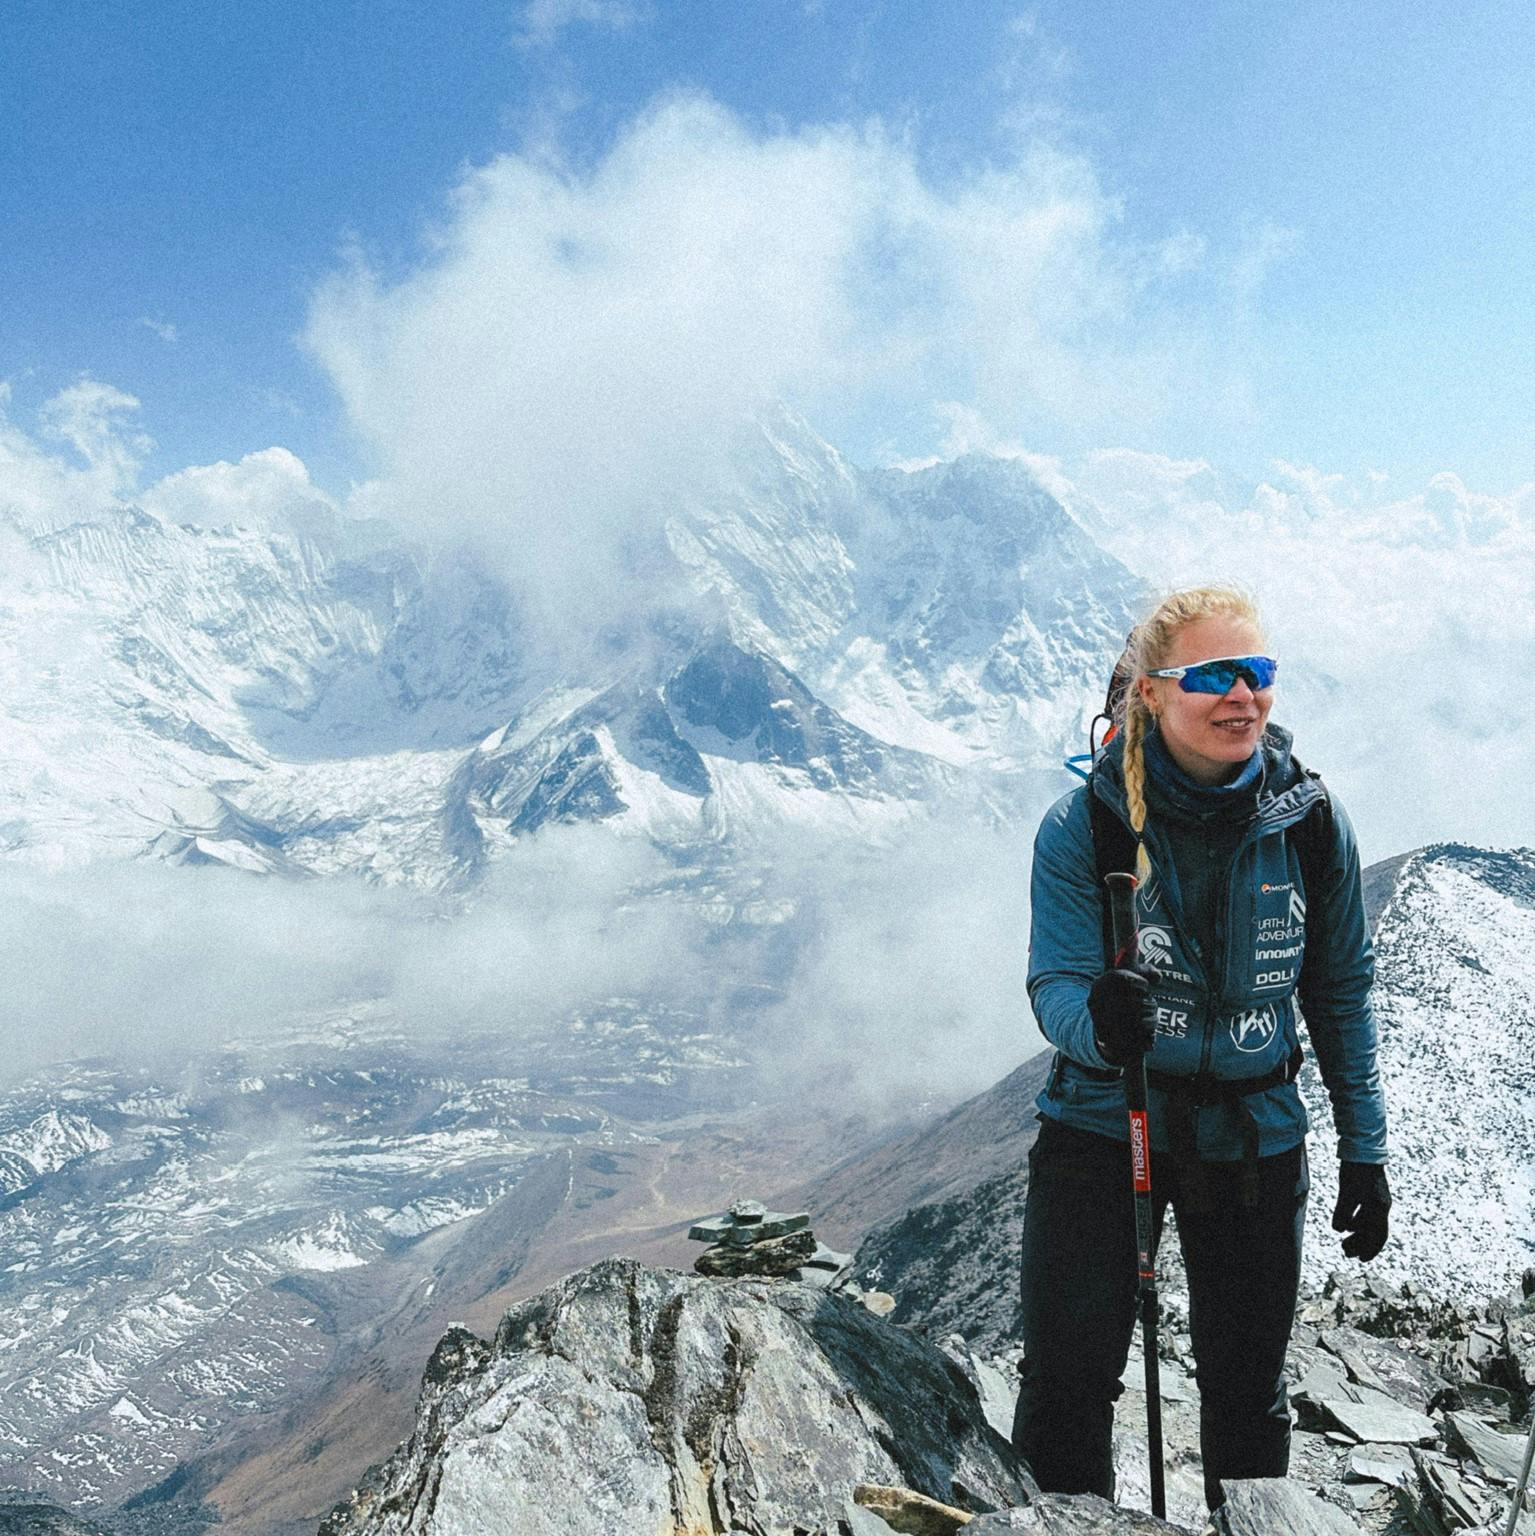 Emma Østergaard har de sidste uger nærmet sig årets helt store begivenhed: Bestigningen af Mount Everest. De sidste uger har hun således trekket i området omkring verdens højeste bjerg for at vænne sin krop til det ekstreme klima.
